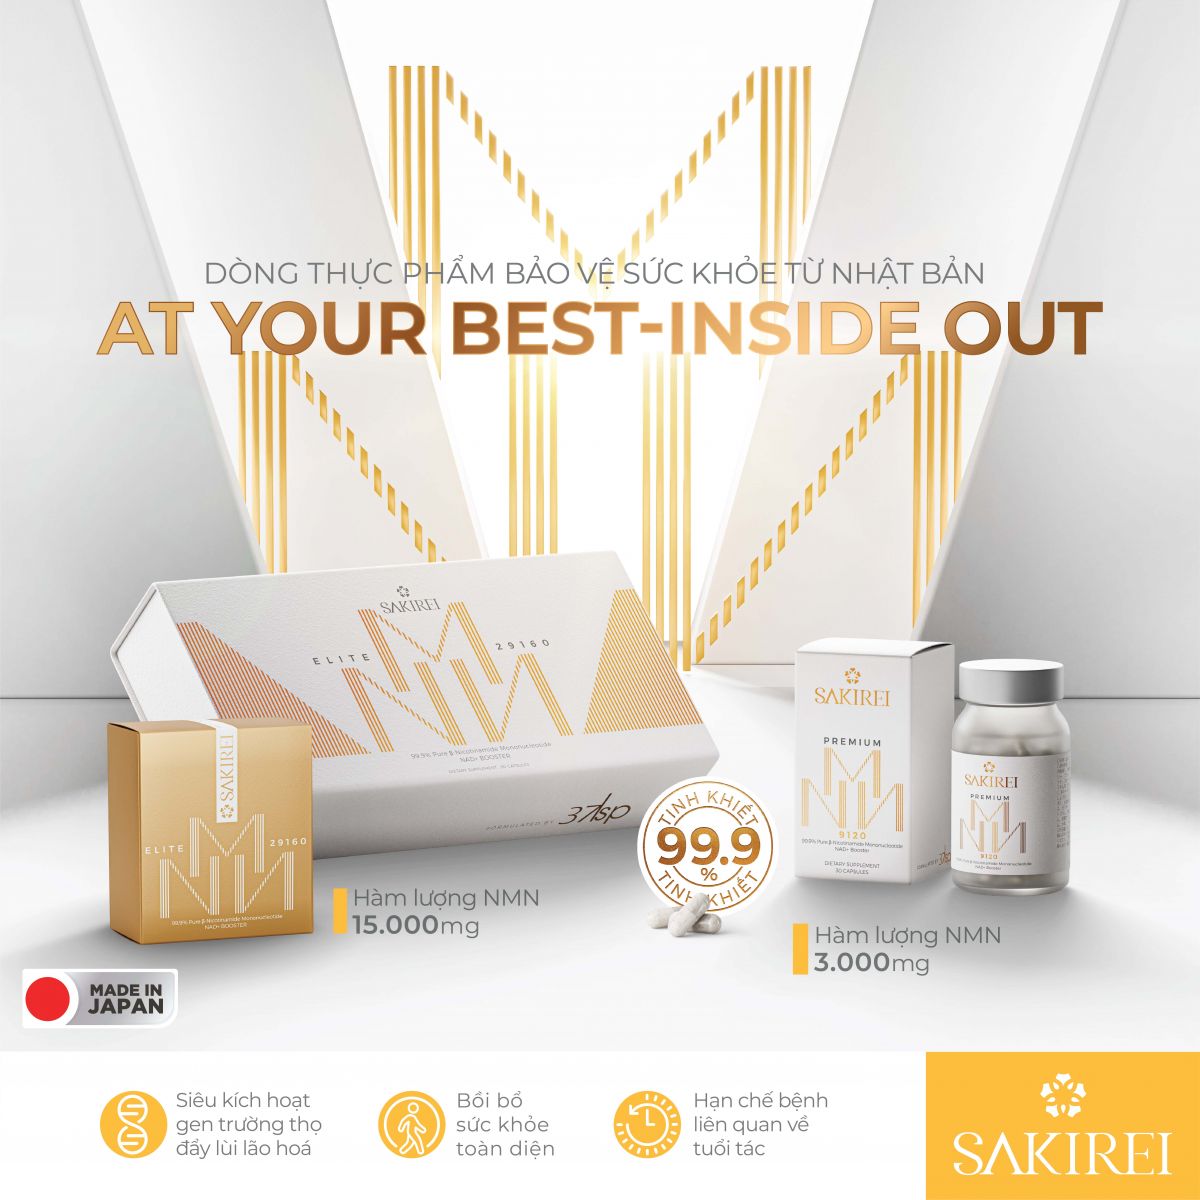 Dòng thực phẩm bảo vệ sức khỏe của Sakirei gồm 2 sản phẩm với hàm lượng NMN và thành phần khác nhau nhằm đáp ứng theo nhu cầu đa dạng của khách hàng.